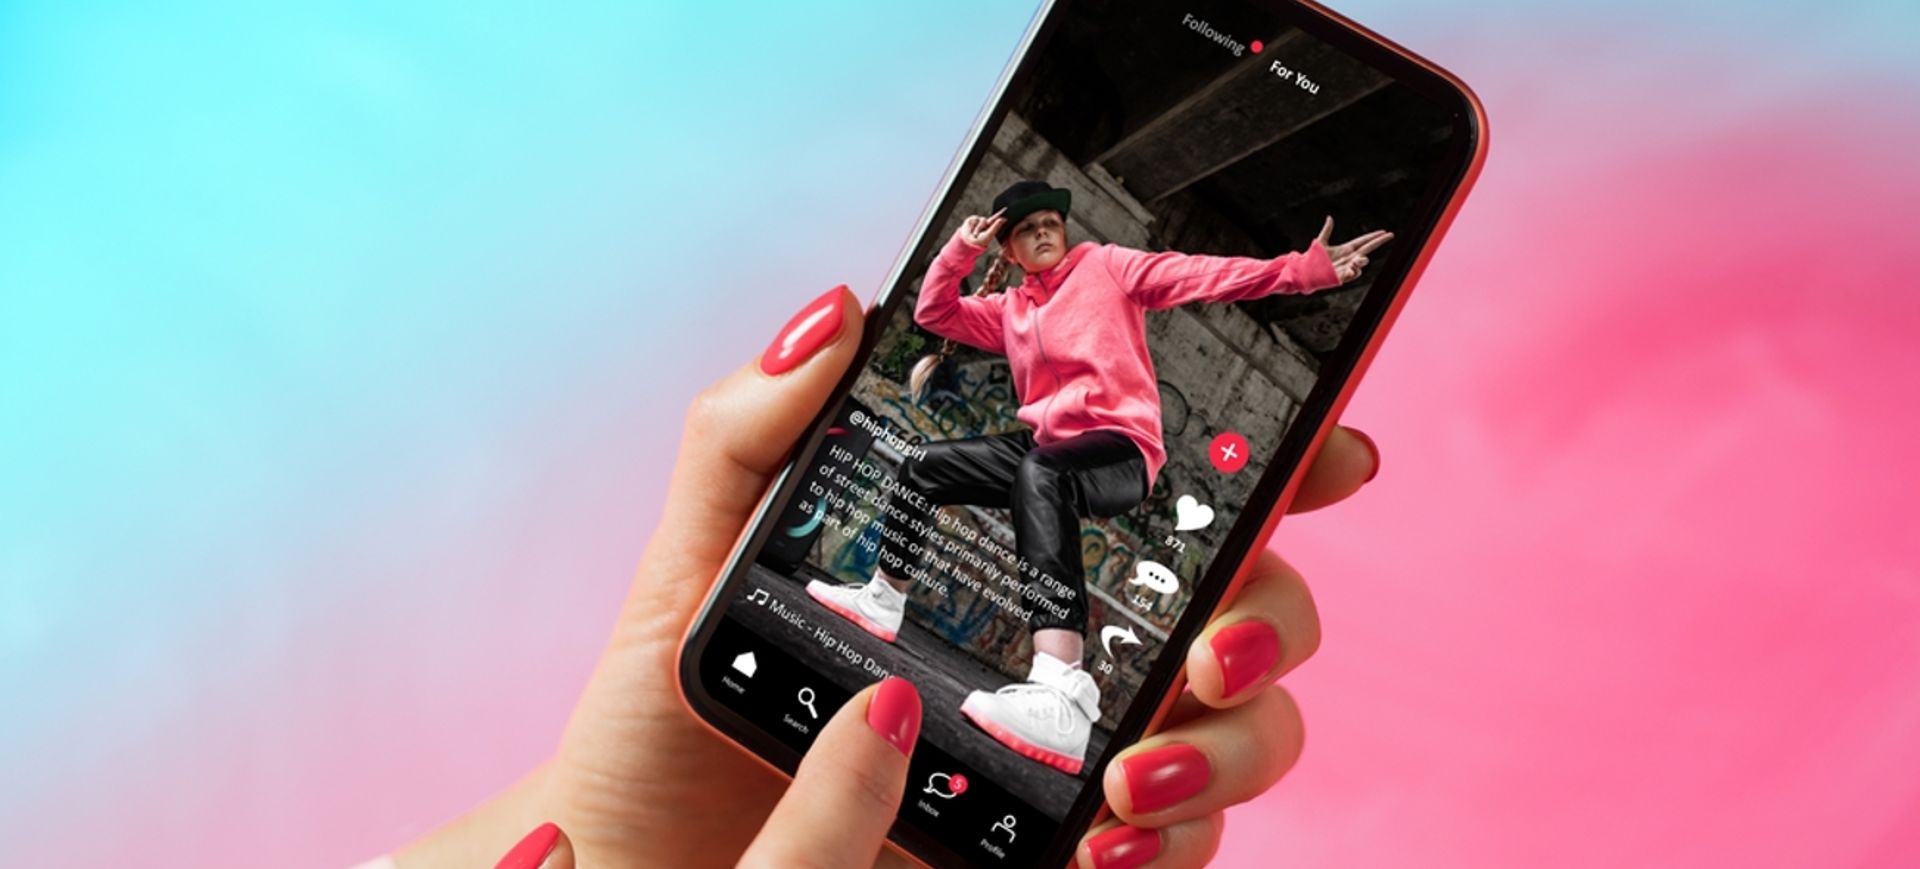 Mão feminina, com as unhas pintadas de rosa, segura um smartphone; na tela do aparelho é possível ver um vídeo de uma pessoa vestida com calças pretas, tênis e moletom rosa, representando criadores de conteíudo, também conhecidos como influenciadores digitais